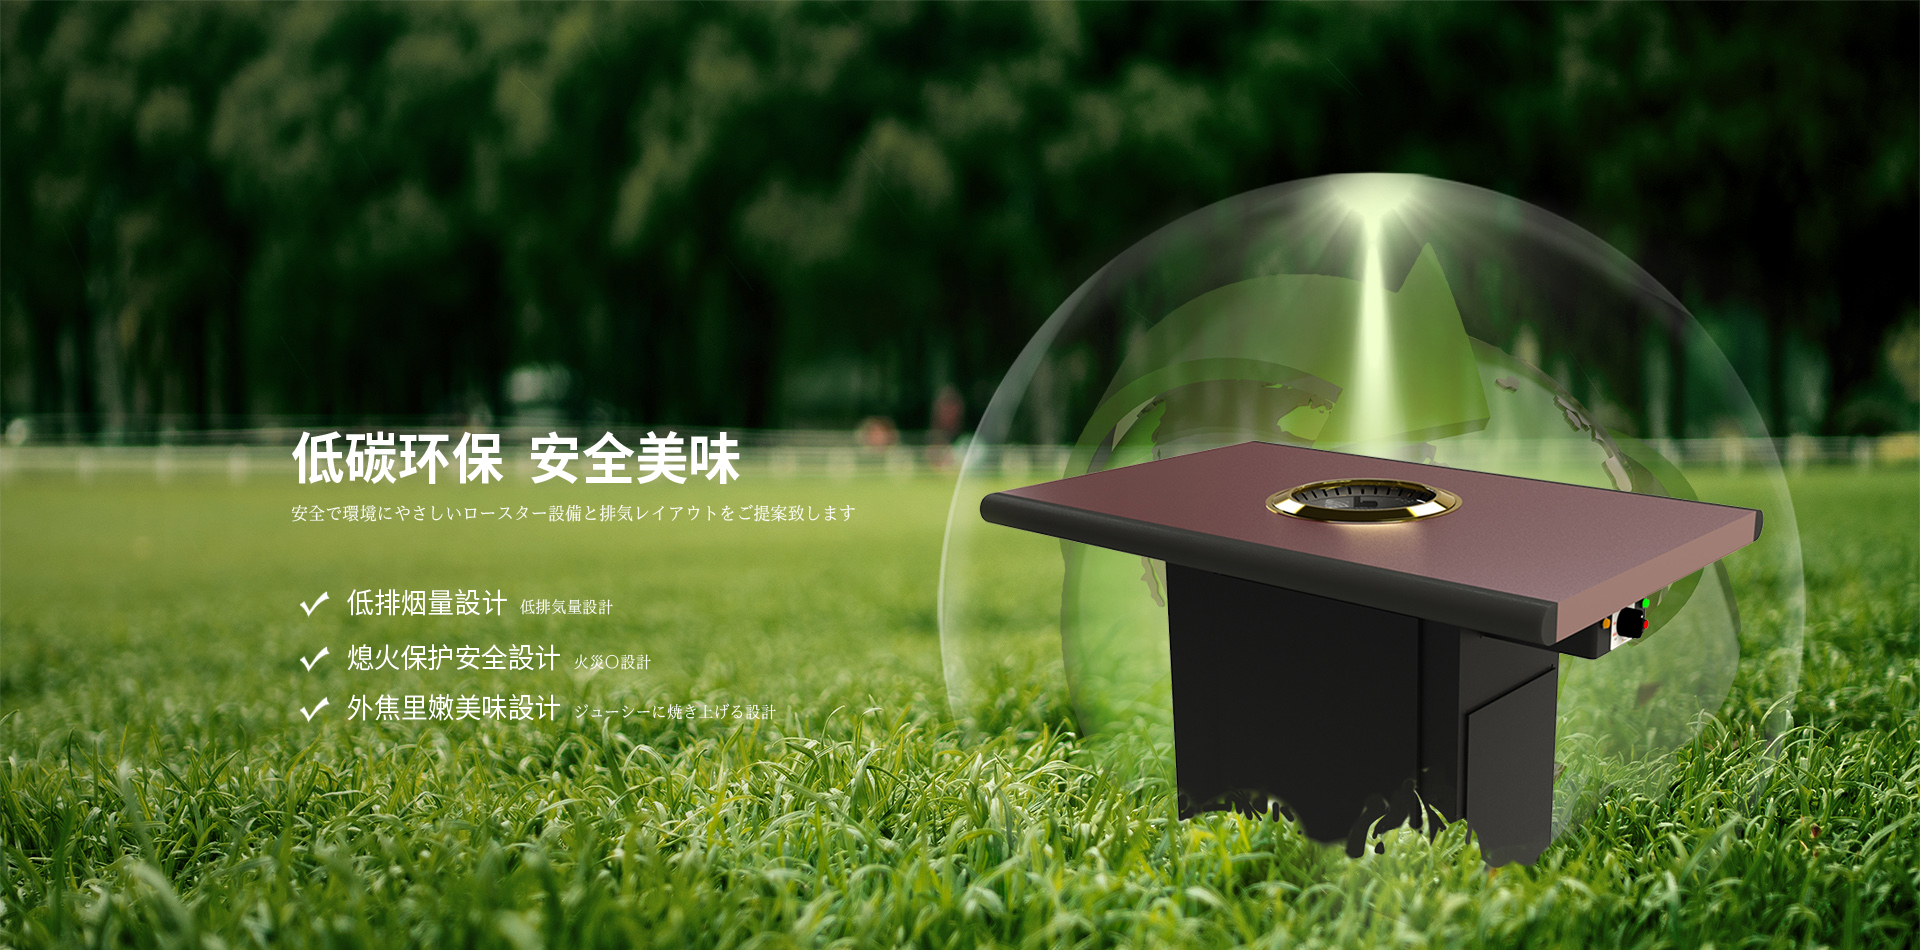 关于当前产品cq9电子游戏·(中国)官方网站的成功案例等相关图片